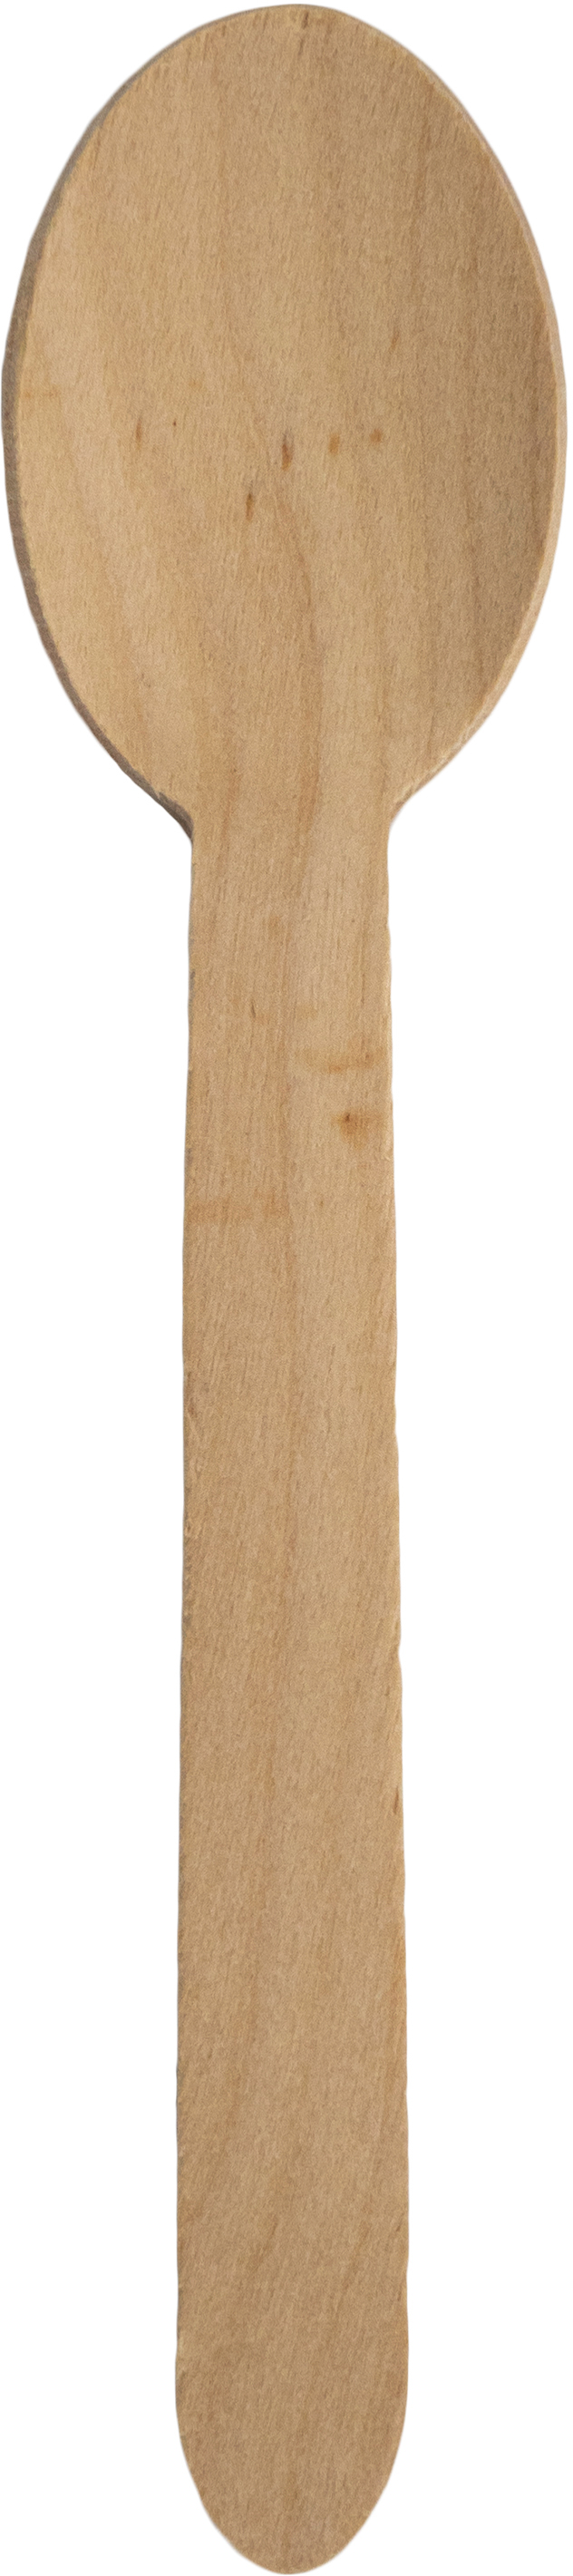 EJS Cuillère en bois 5144.3002.25 brun 25 pcs.